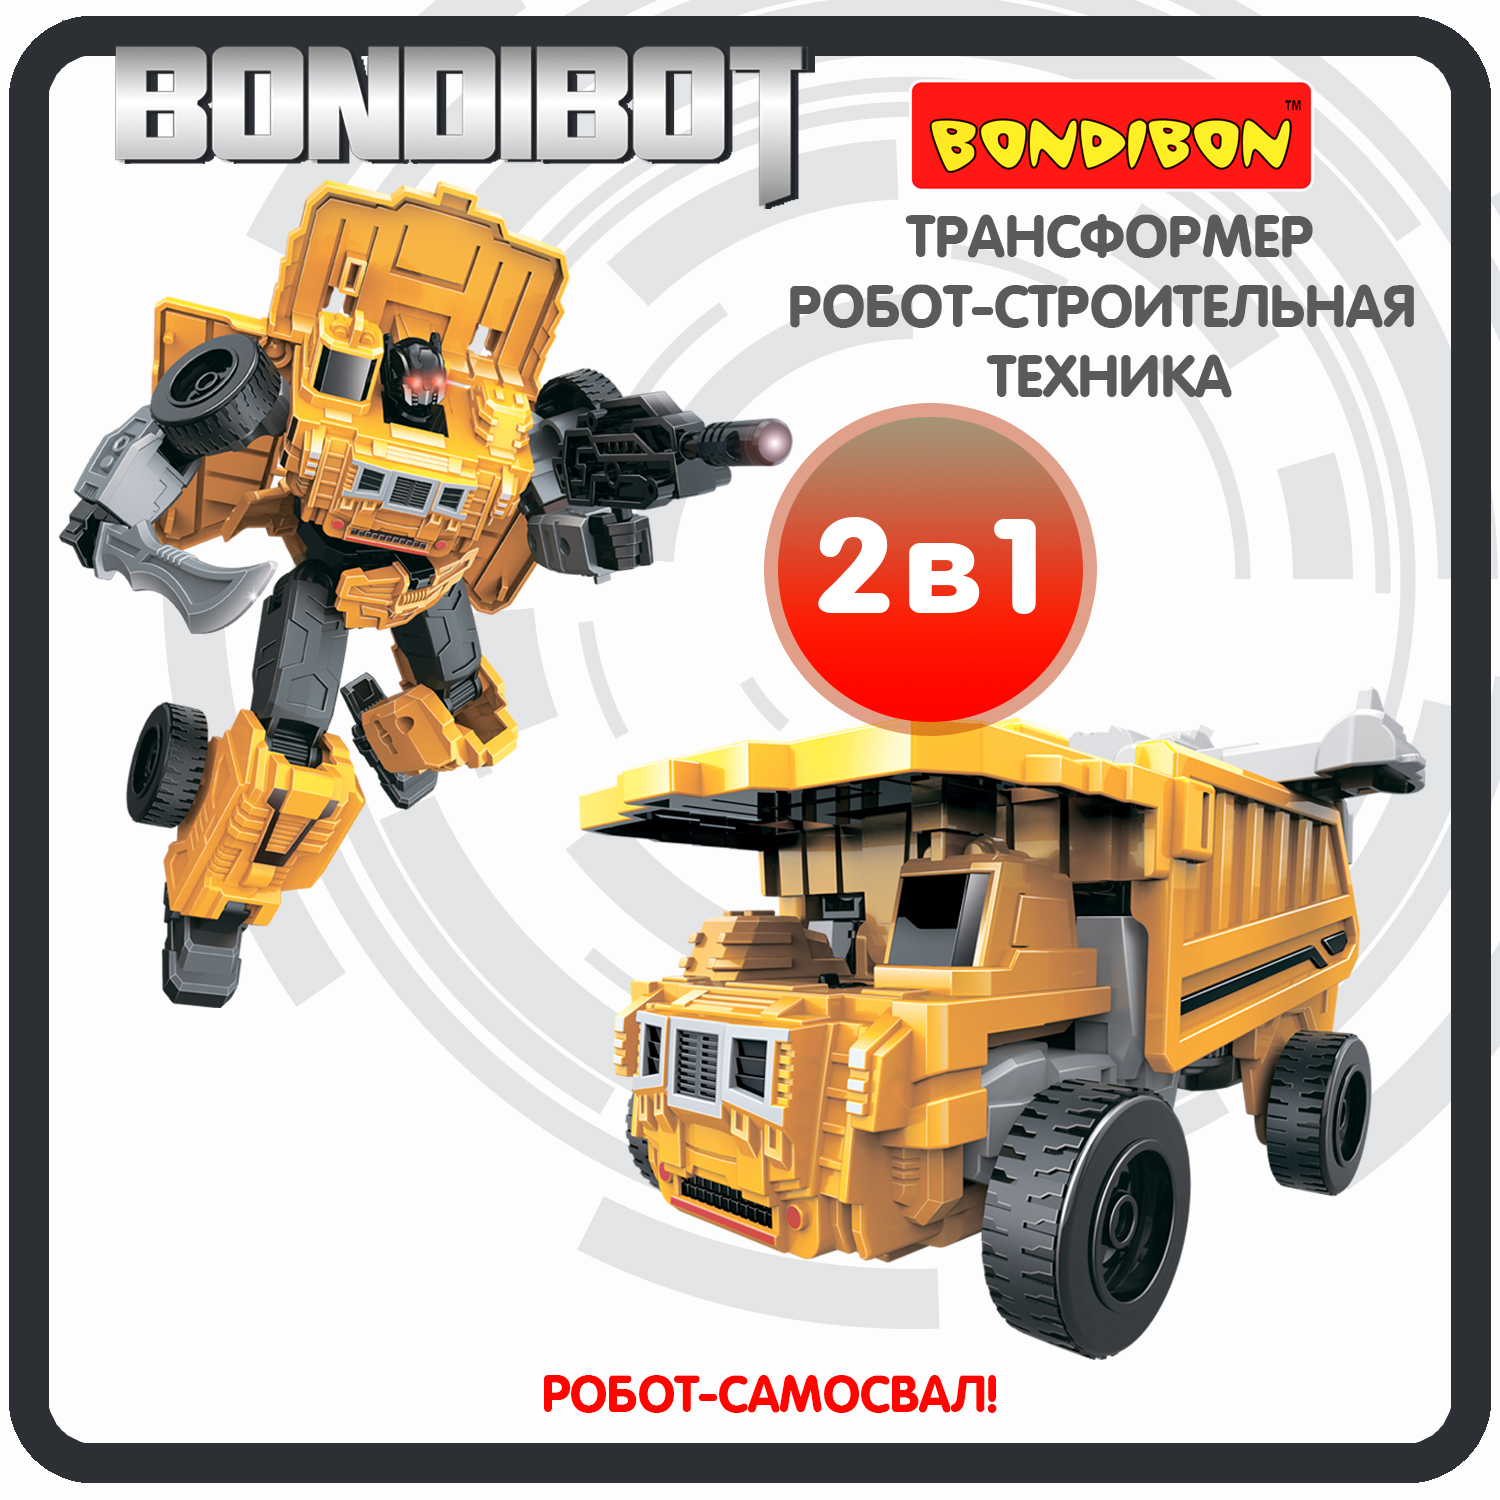 Трансформер робот-строительная техника, 2в1 BONDIBOT Bondibon, самосвал / ВВ6046 трансформер строительная техника 2в1 bondibot bondibon экскаватор погрузчик вв6051